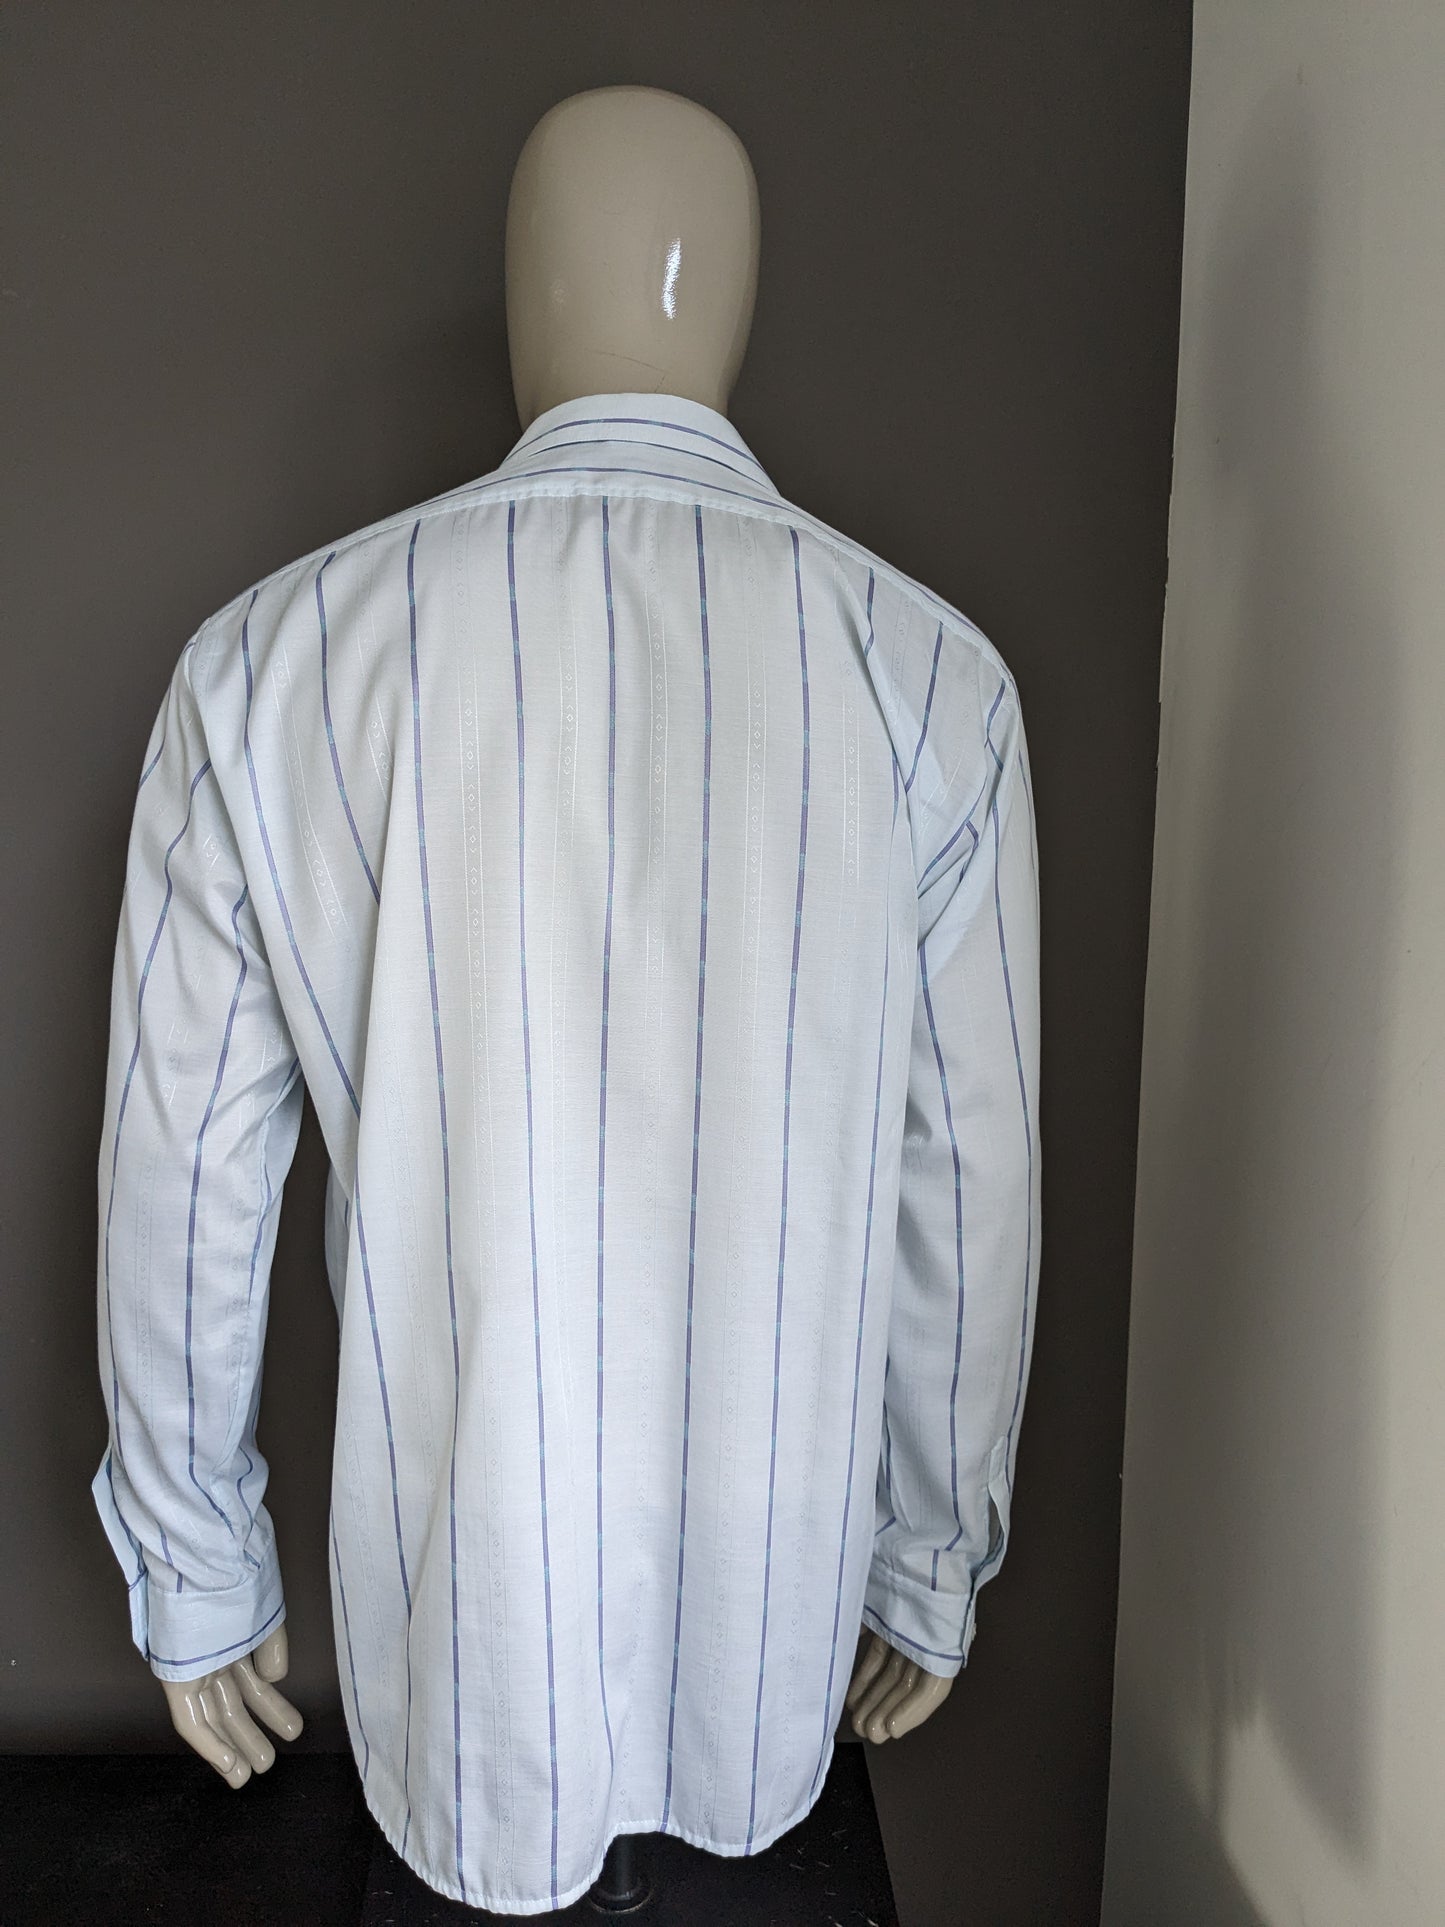 La chemise de Jacqueline de Tancot des années 70 vintage avec collier ponctuel. Motif bleu clair. Taille xl / xxl-2xl.